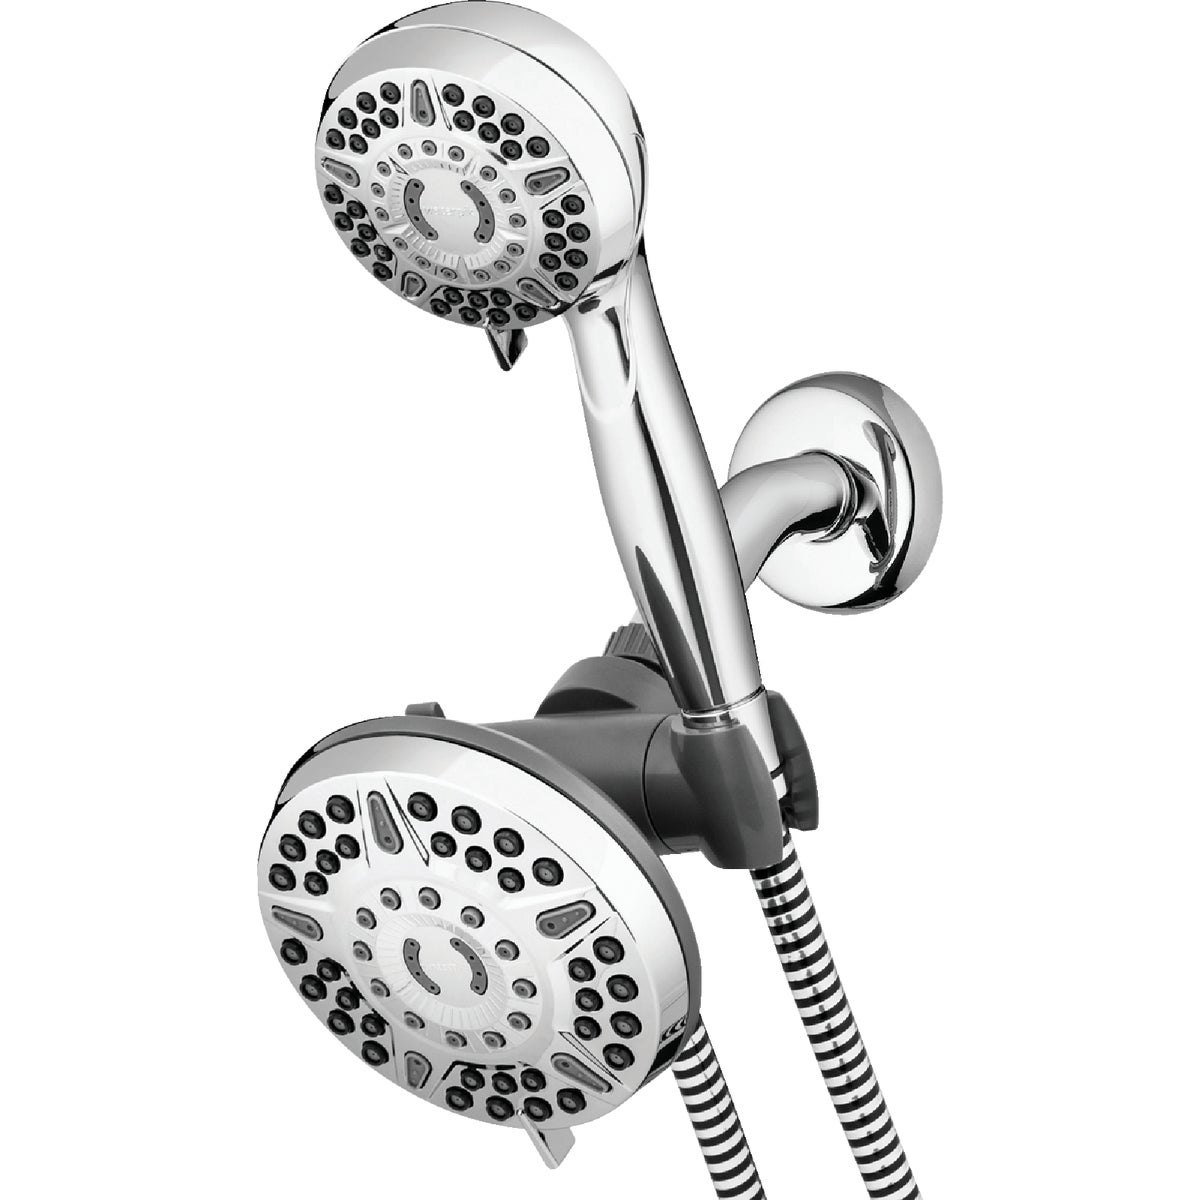 Waterpik PowerPulse Massage Dual Shower System 6+6-Spray 1.8 GPM Combo Handheld Shower & Rainfall Showerhead, Chrome